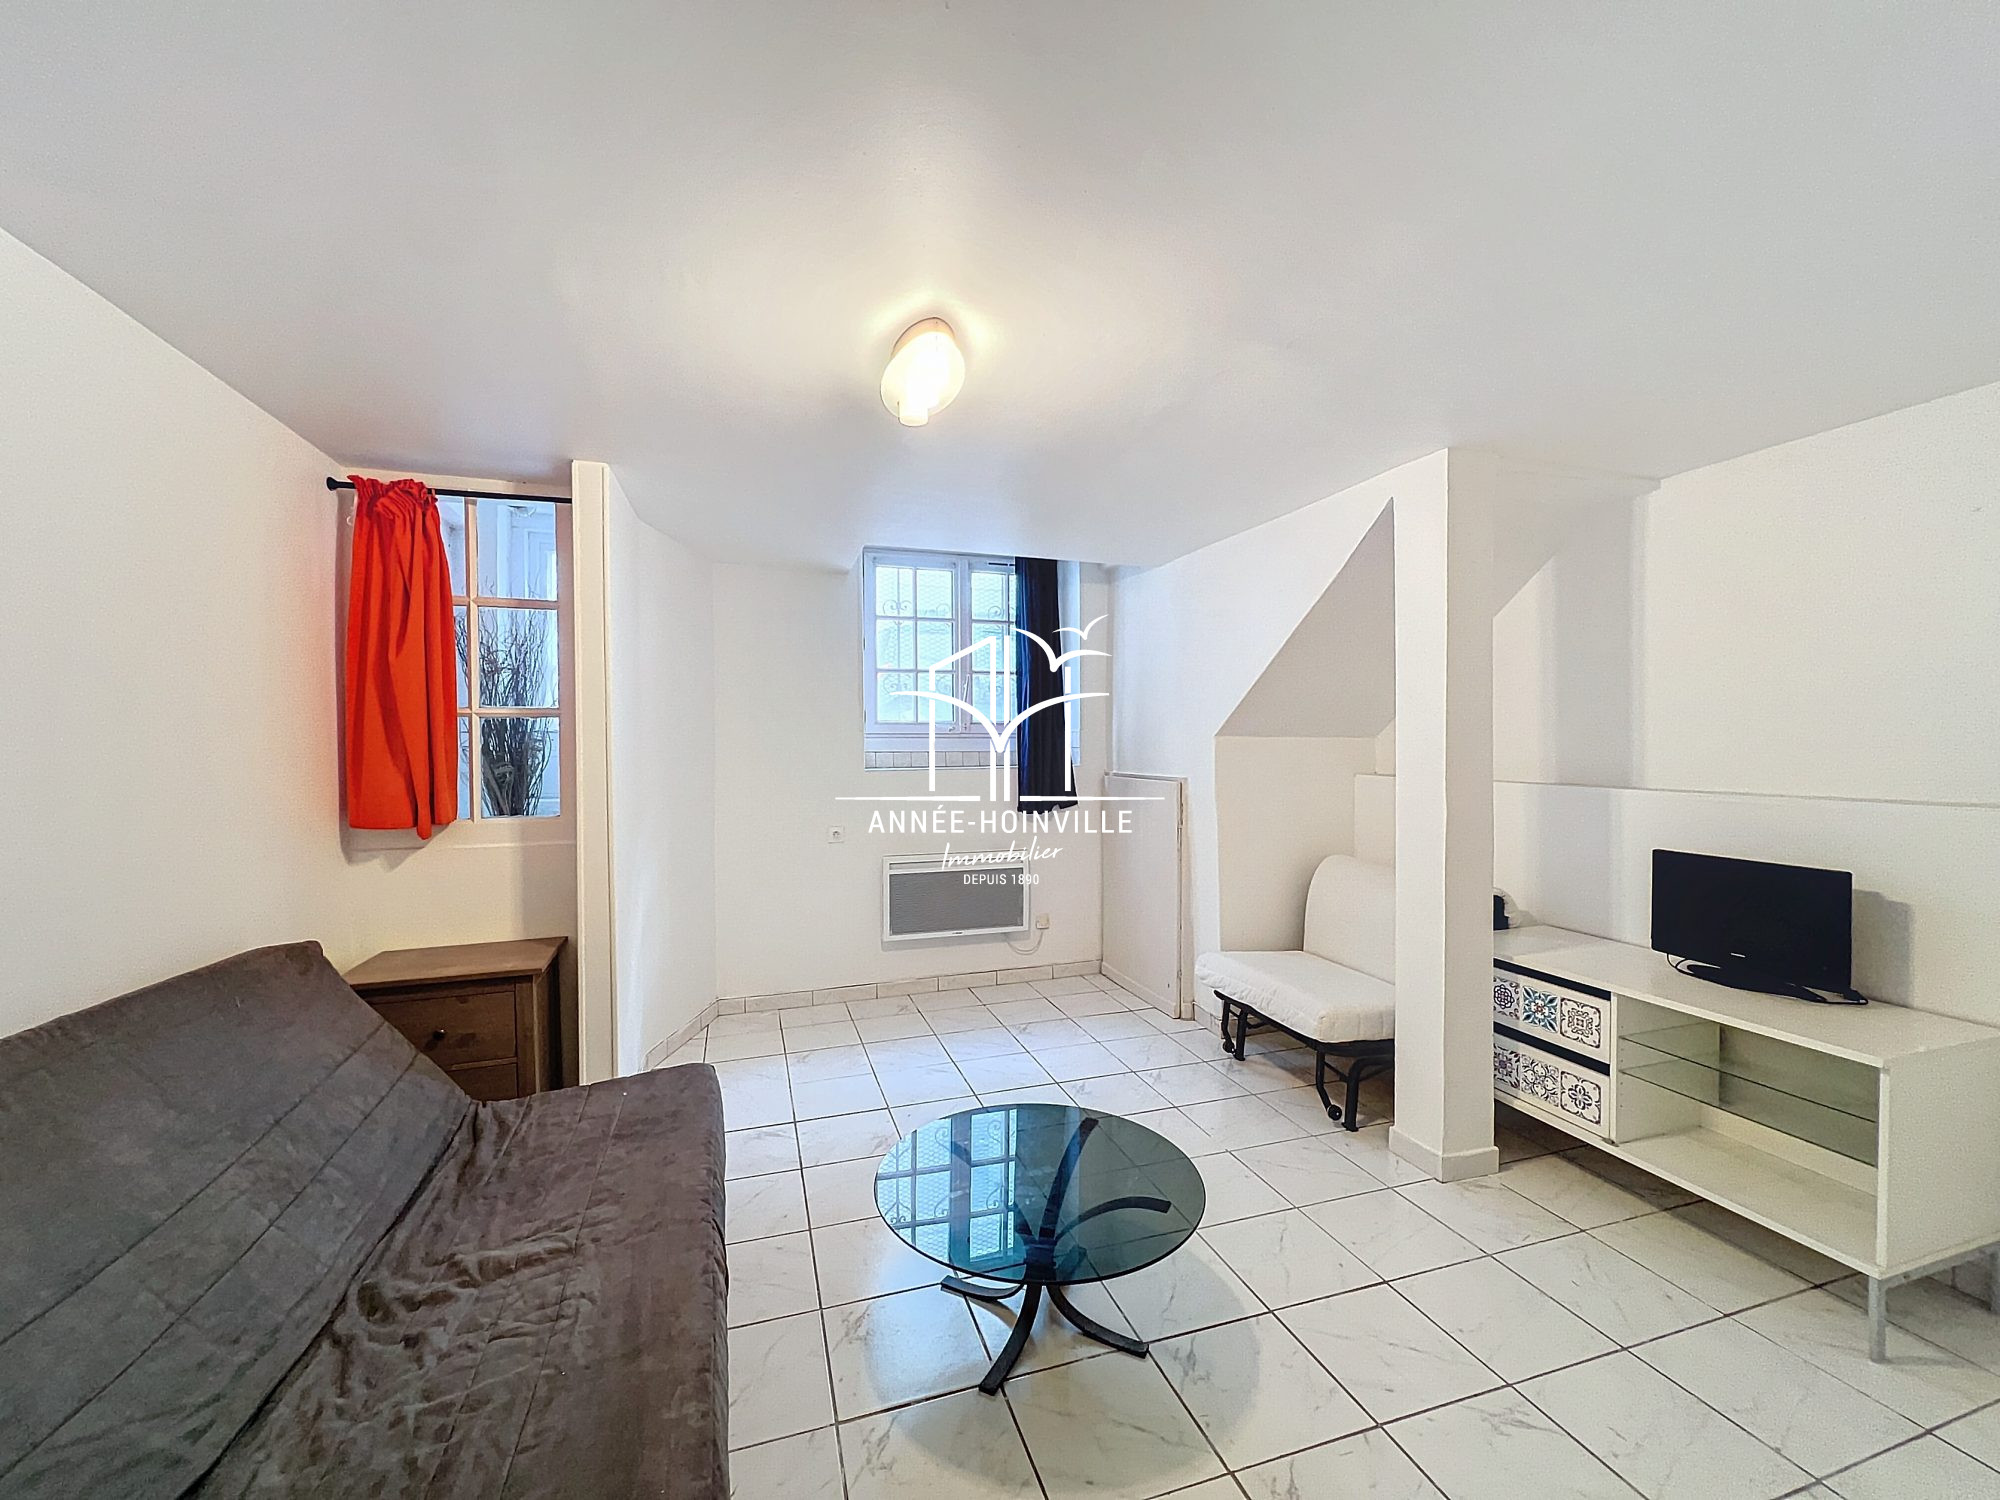 Vente Appartement 24m² 1 Pièce à Trouville-sur-Mer (14360) - Année-Hoinville Immobilier